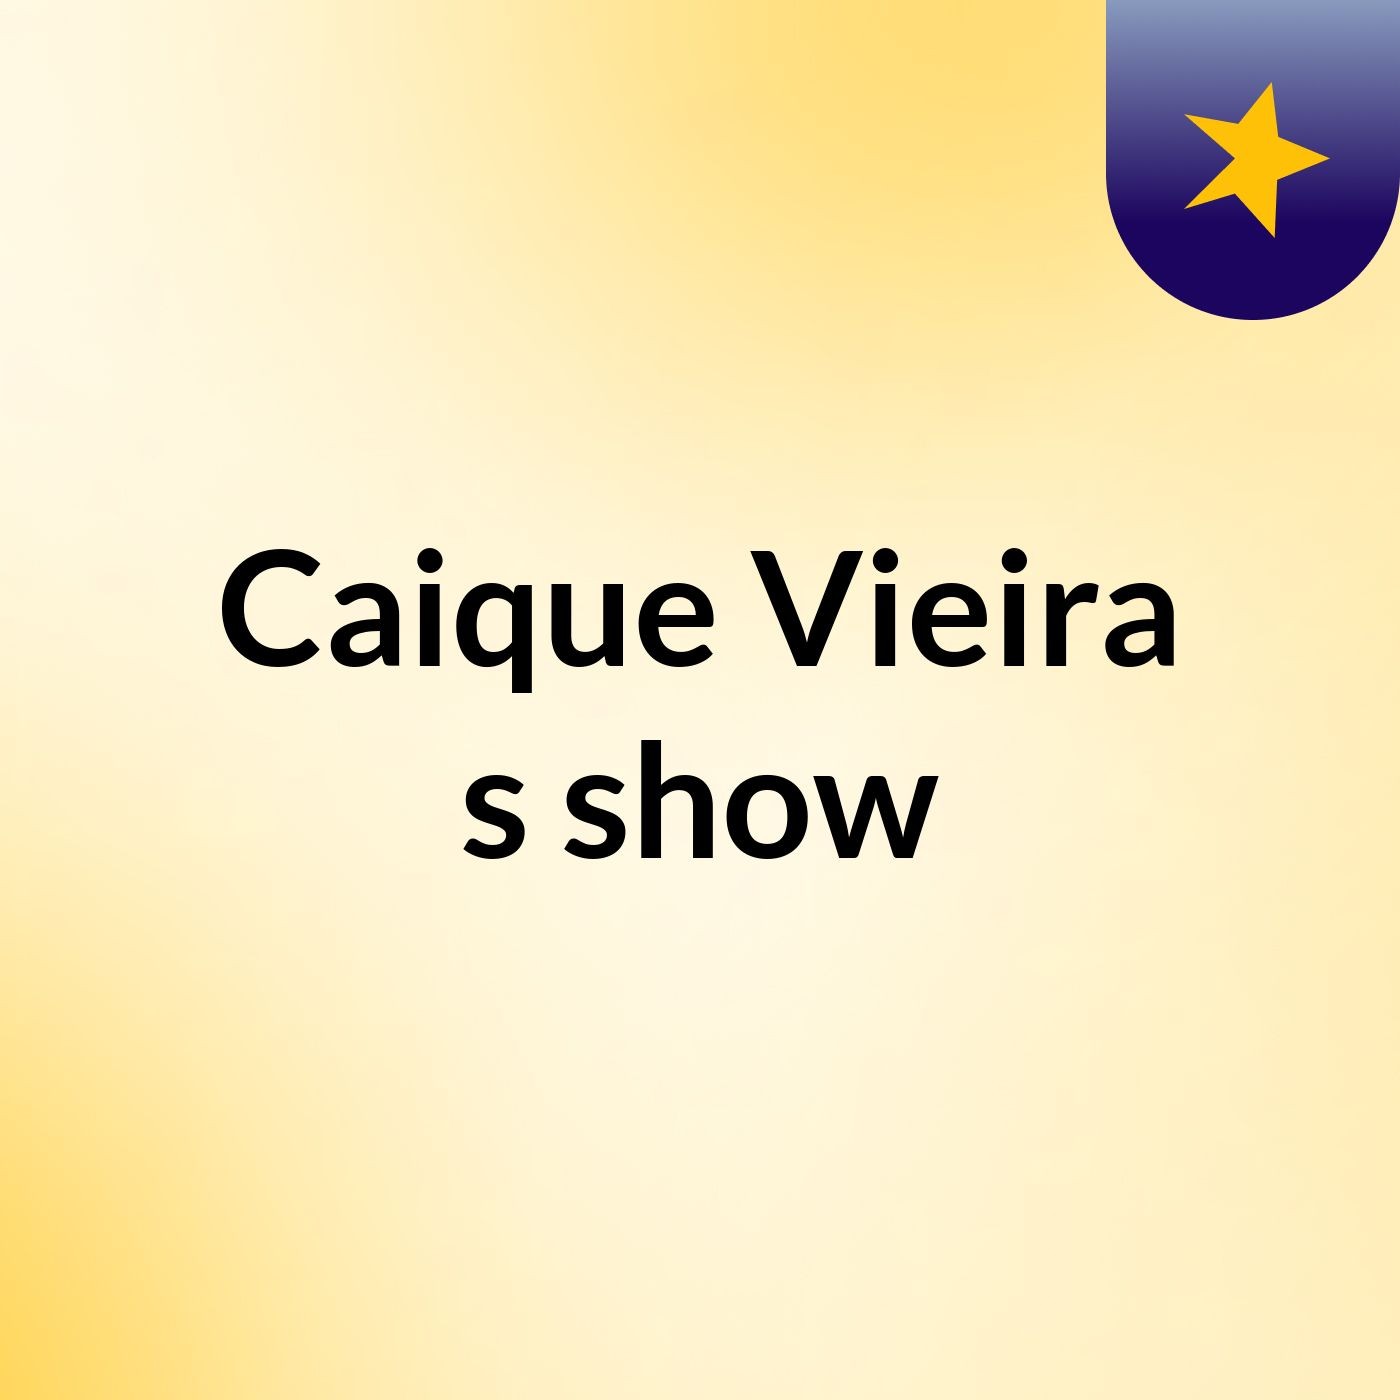 Caique Vieira's show